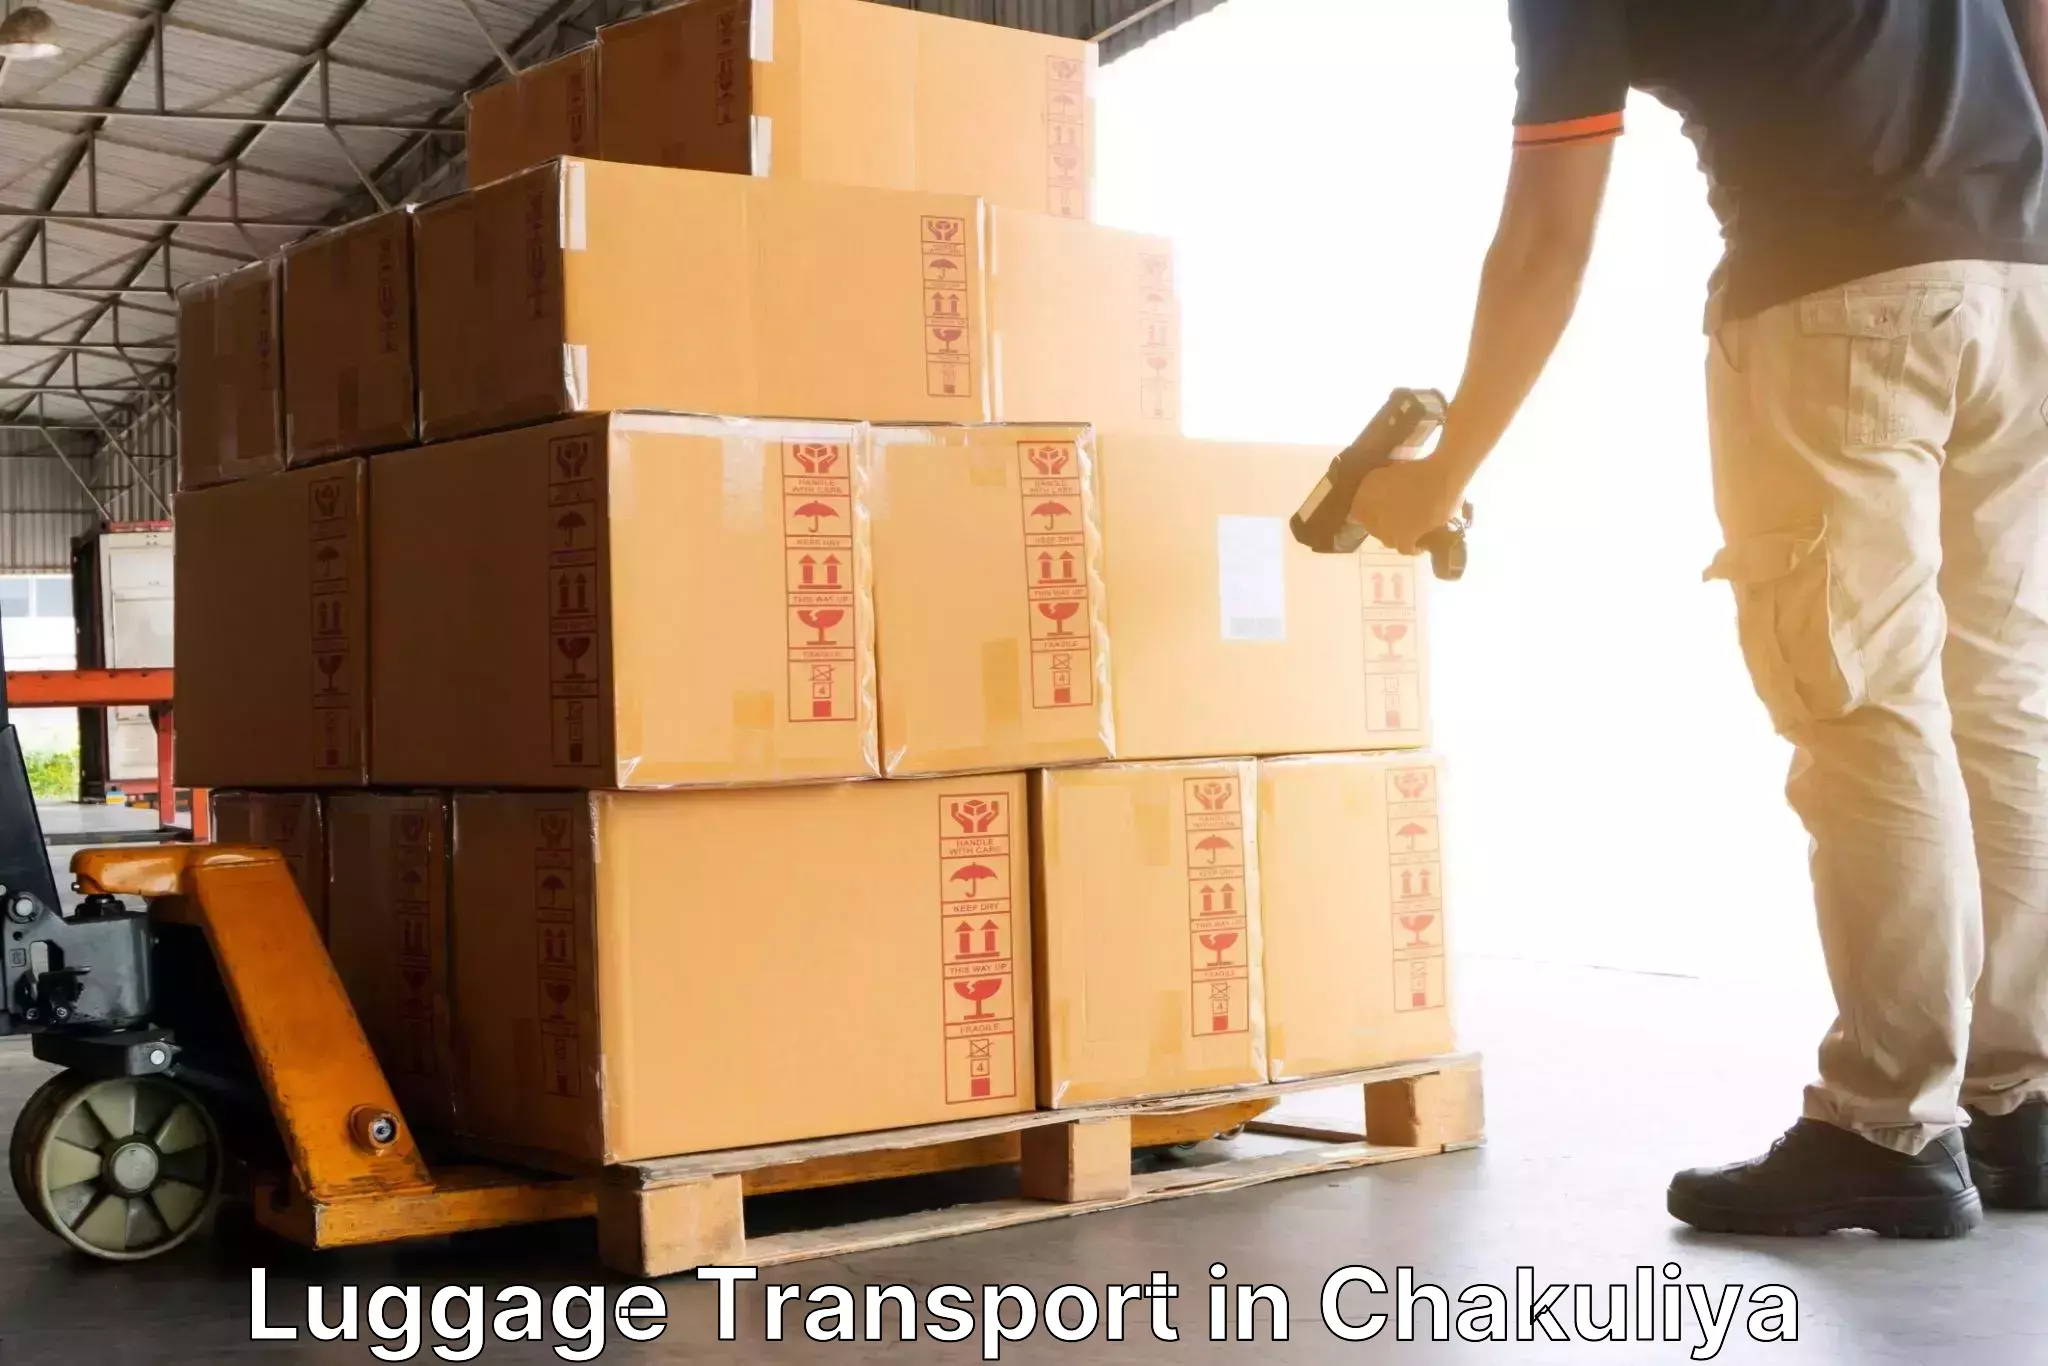 Regional luggage transport in Chakuliya